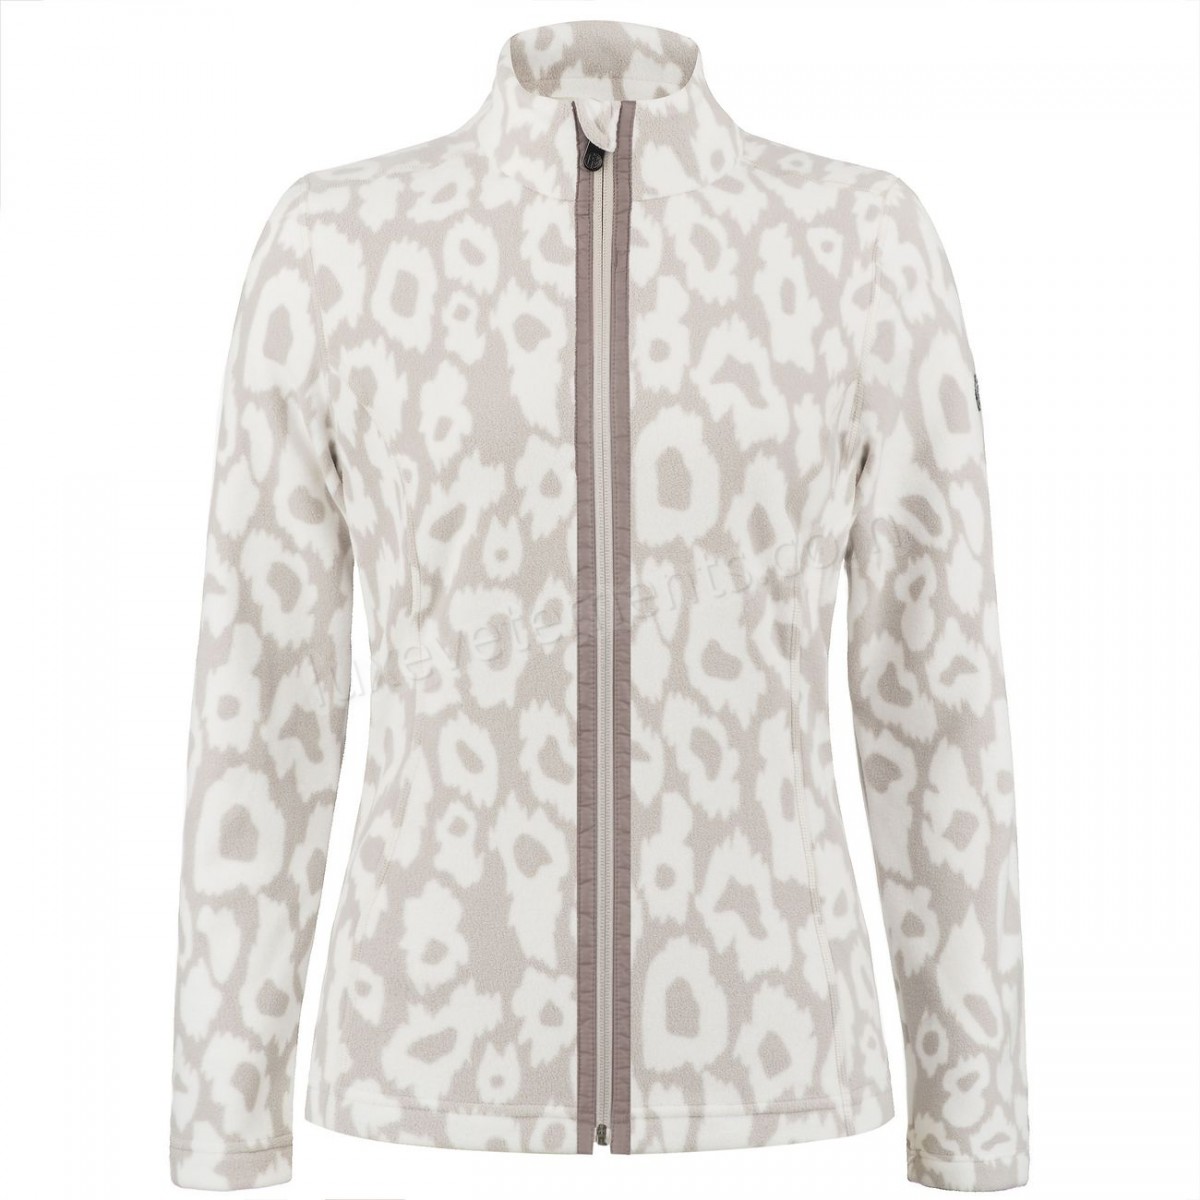 Poivre Blanc-Sports d'hiver femme POIVRE BLANC Veste Polaire Poivre Blanc Fleece Jacket 1500 Panther Grey Femme Vente en ligne - -0